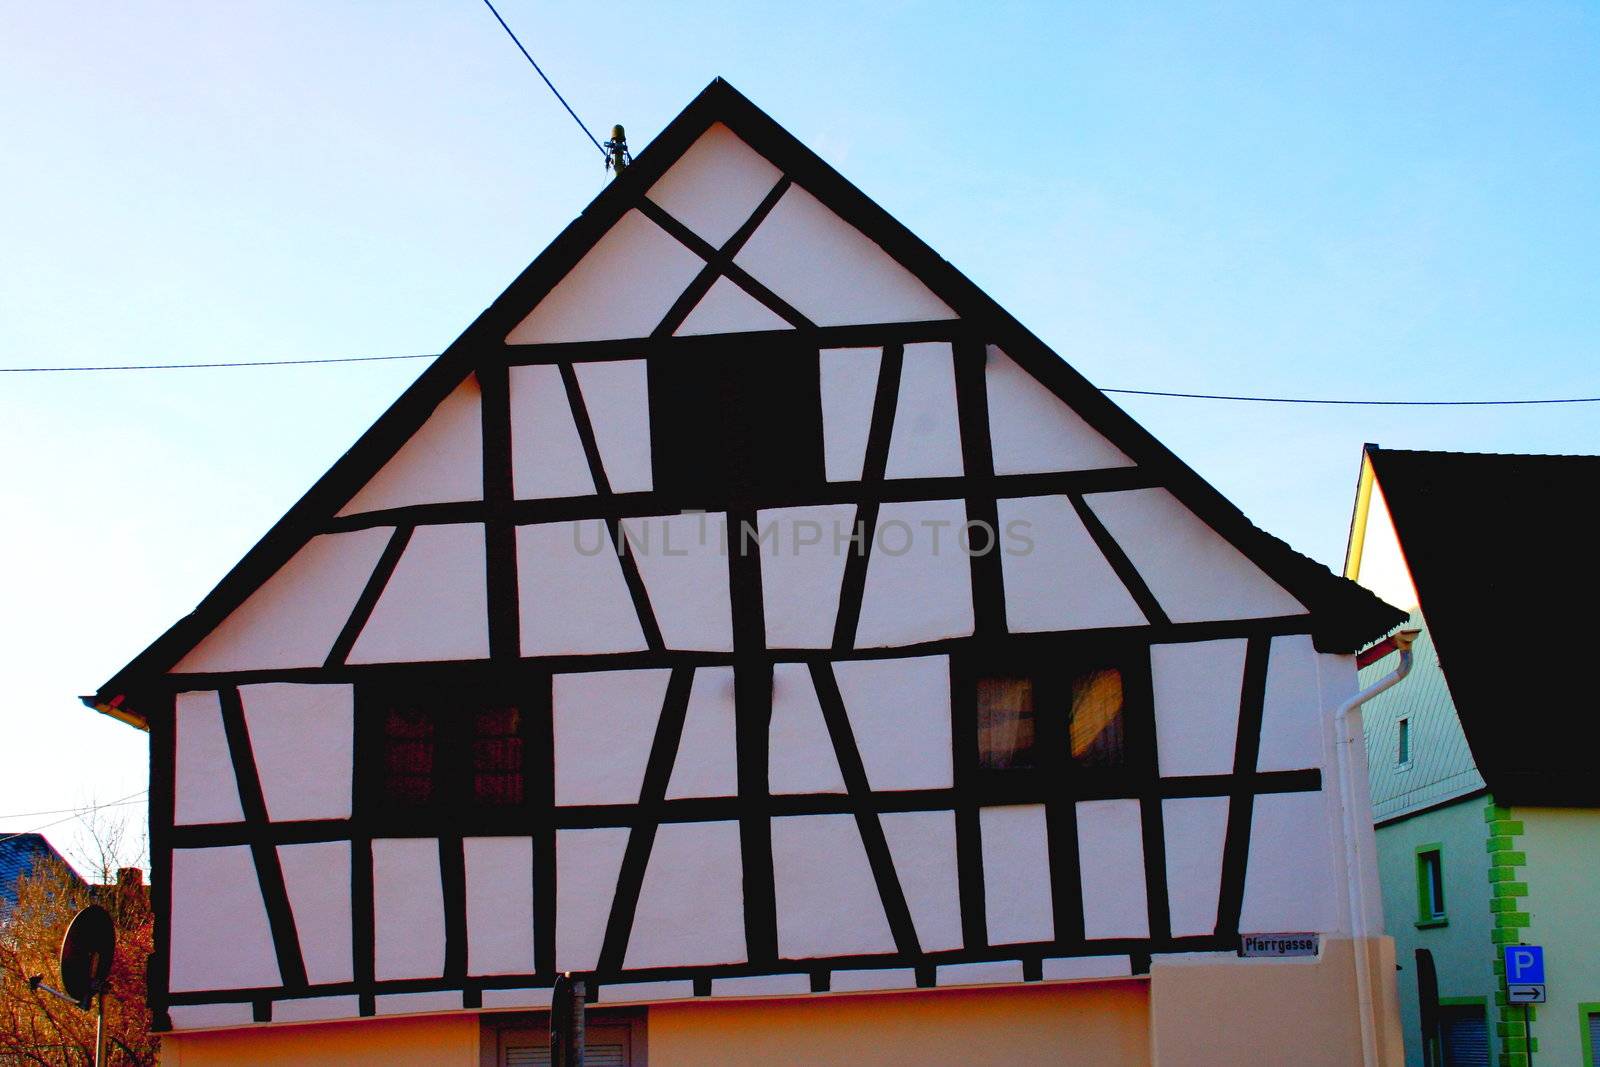 Fachwerkhaus mit drei Fenstern in Birkenfeld,Deutschland	
Half-timbered house with three windows in Birkenfeld, Germany